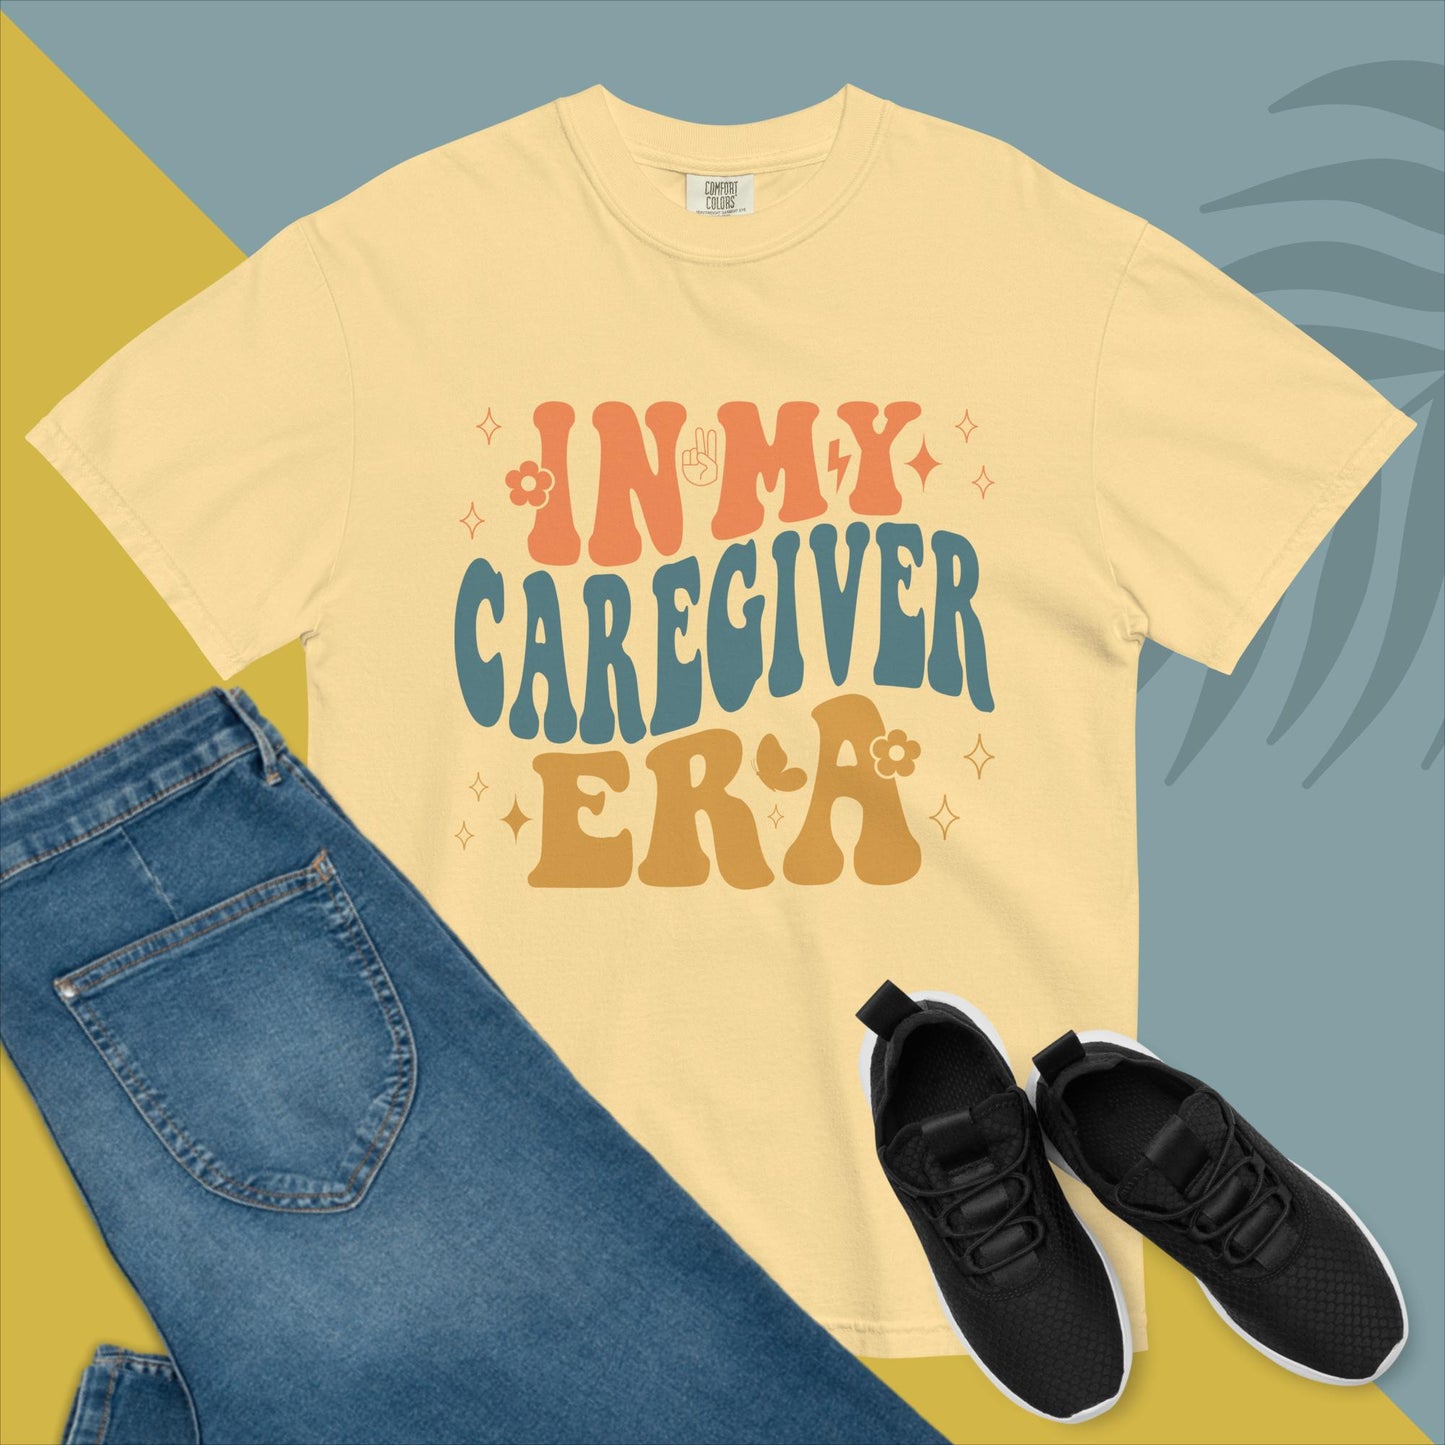 Caregiver Shirt | Home Care | Caregiver Nurse Shirt | In my Caregiver Era